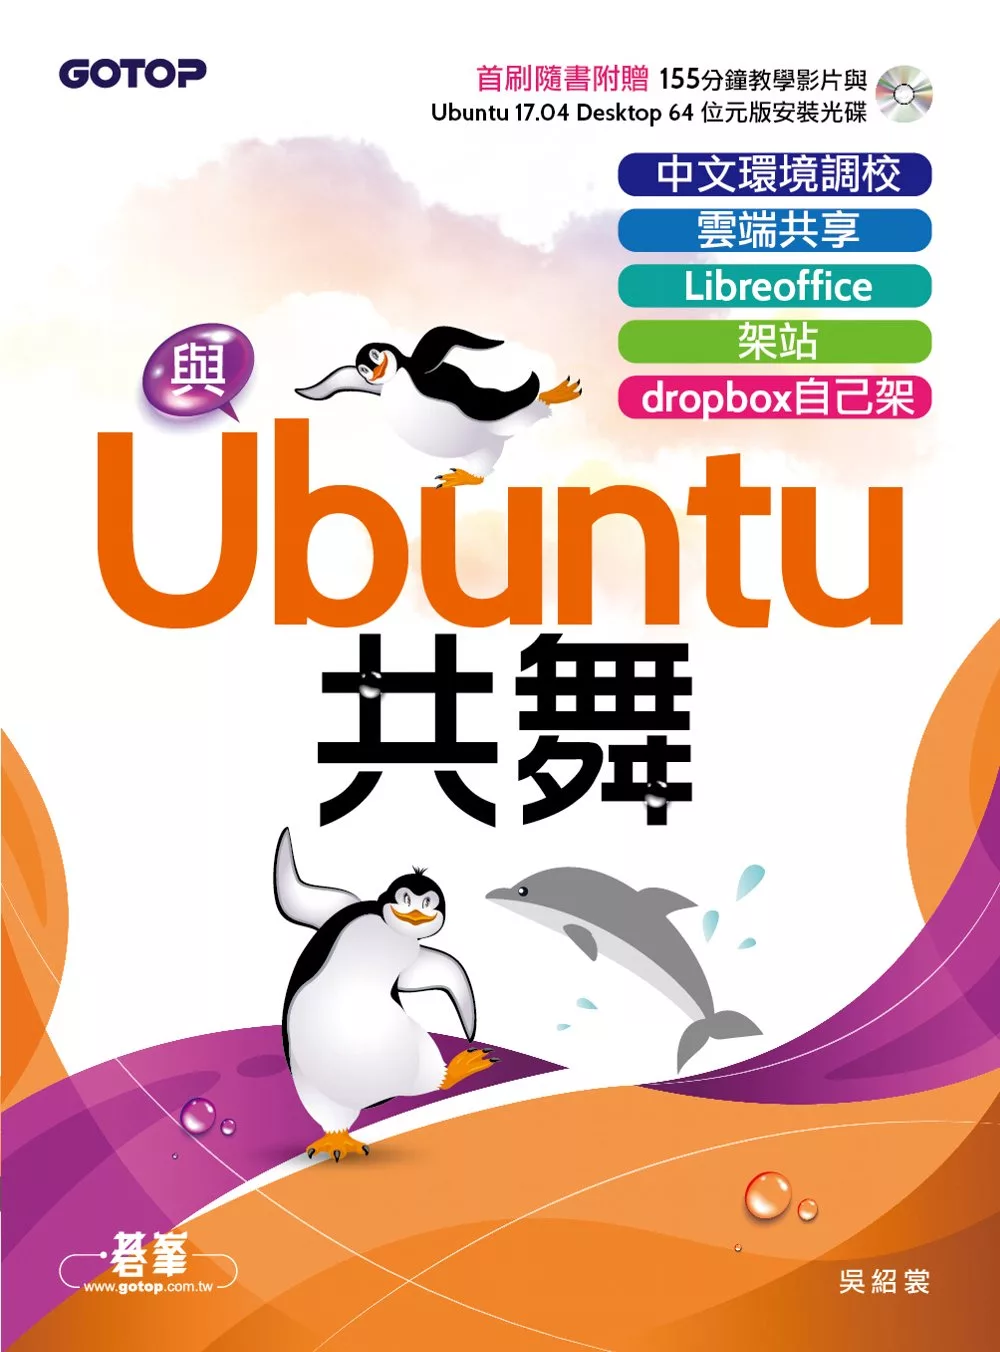 與Ubuntu共舞｜中文環境調校x雲端共享x Libreoffice x 架站 x dropbox自己架 (電子書)